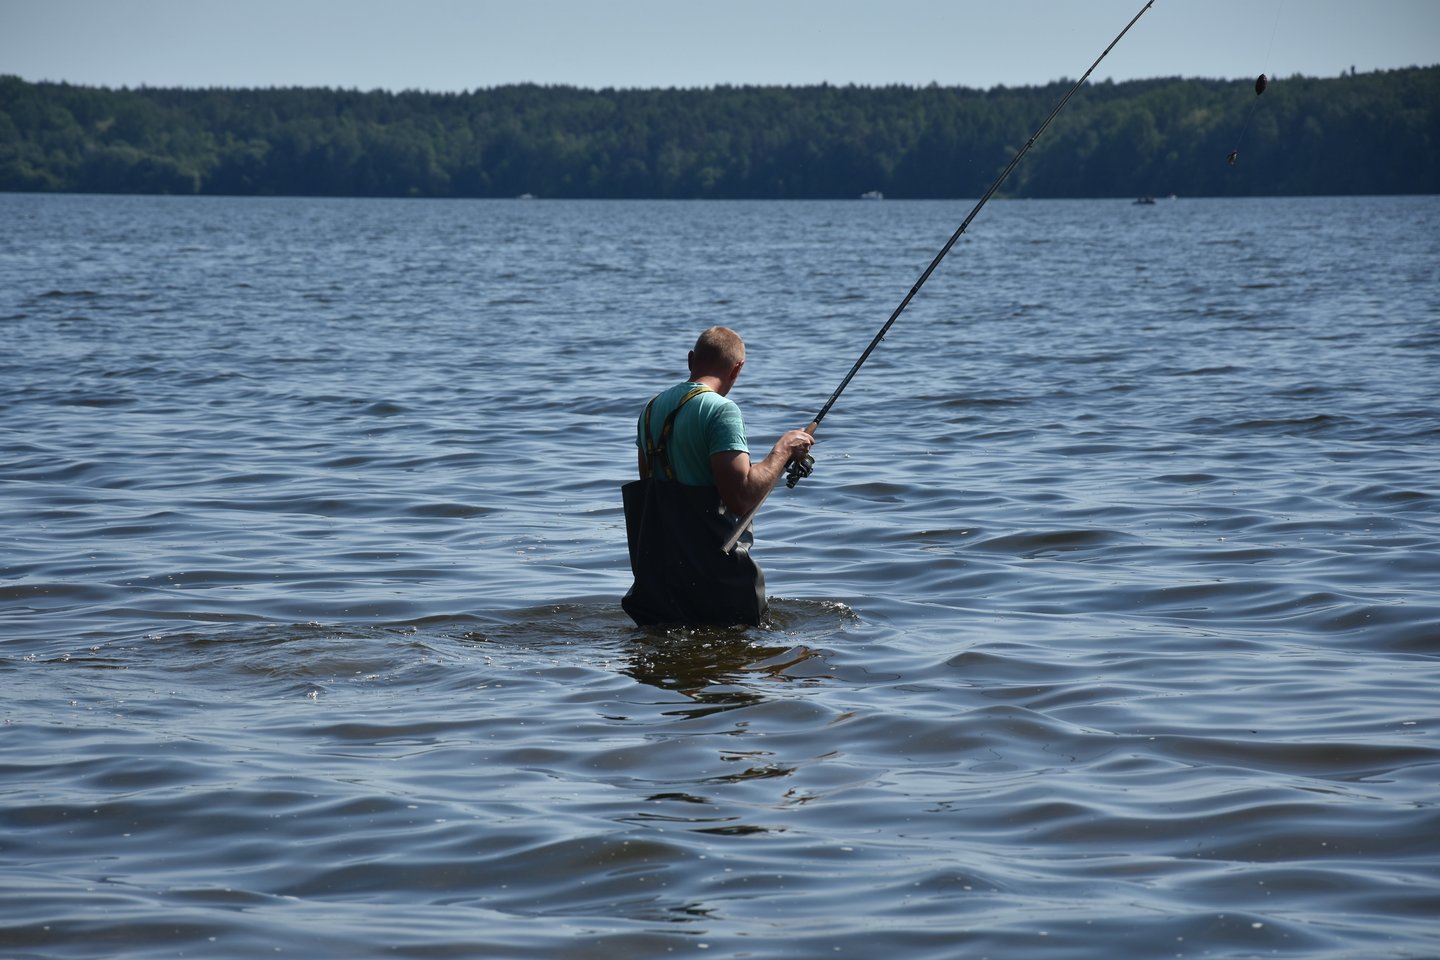  Kauno marių pakrantėse būna gausu žvejų mėgėjų, bet meškerioti karpines žuvis jiems nepatrauklu.<br> A.Srėbalienės nuotr. 